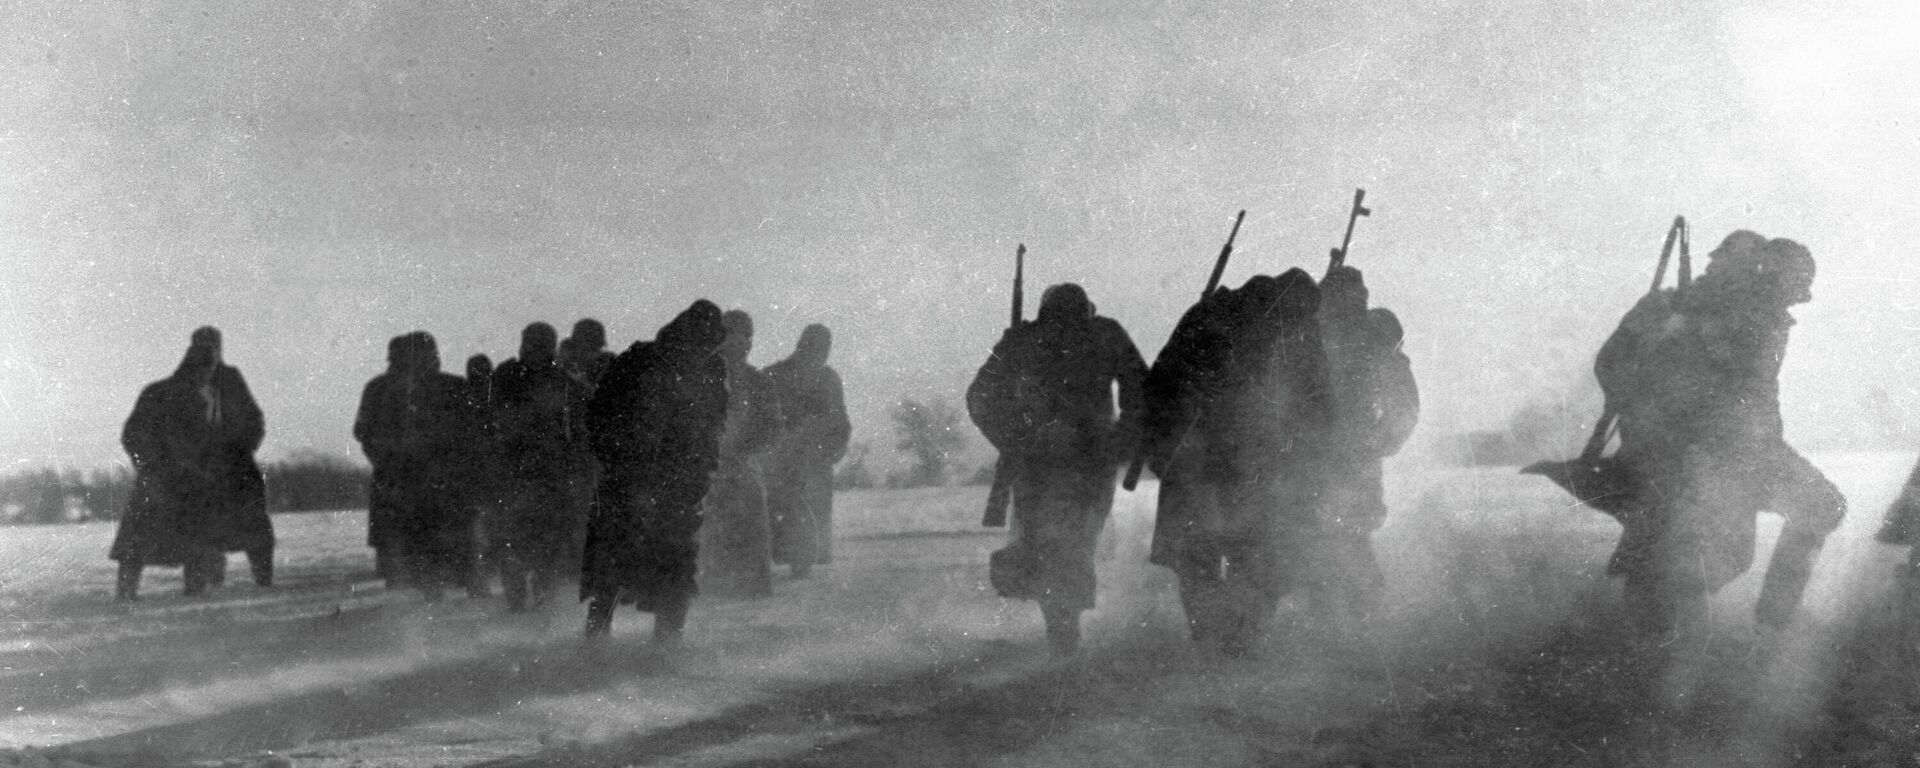 Vācu armijas karavīri padodas gūstā pēc kaujas pie Maskavas  - Sputnik Latvija, 1920, 09.12.2021